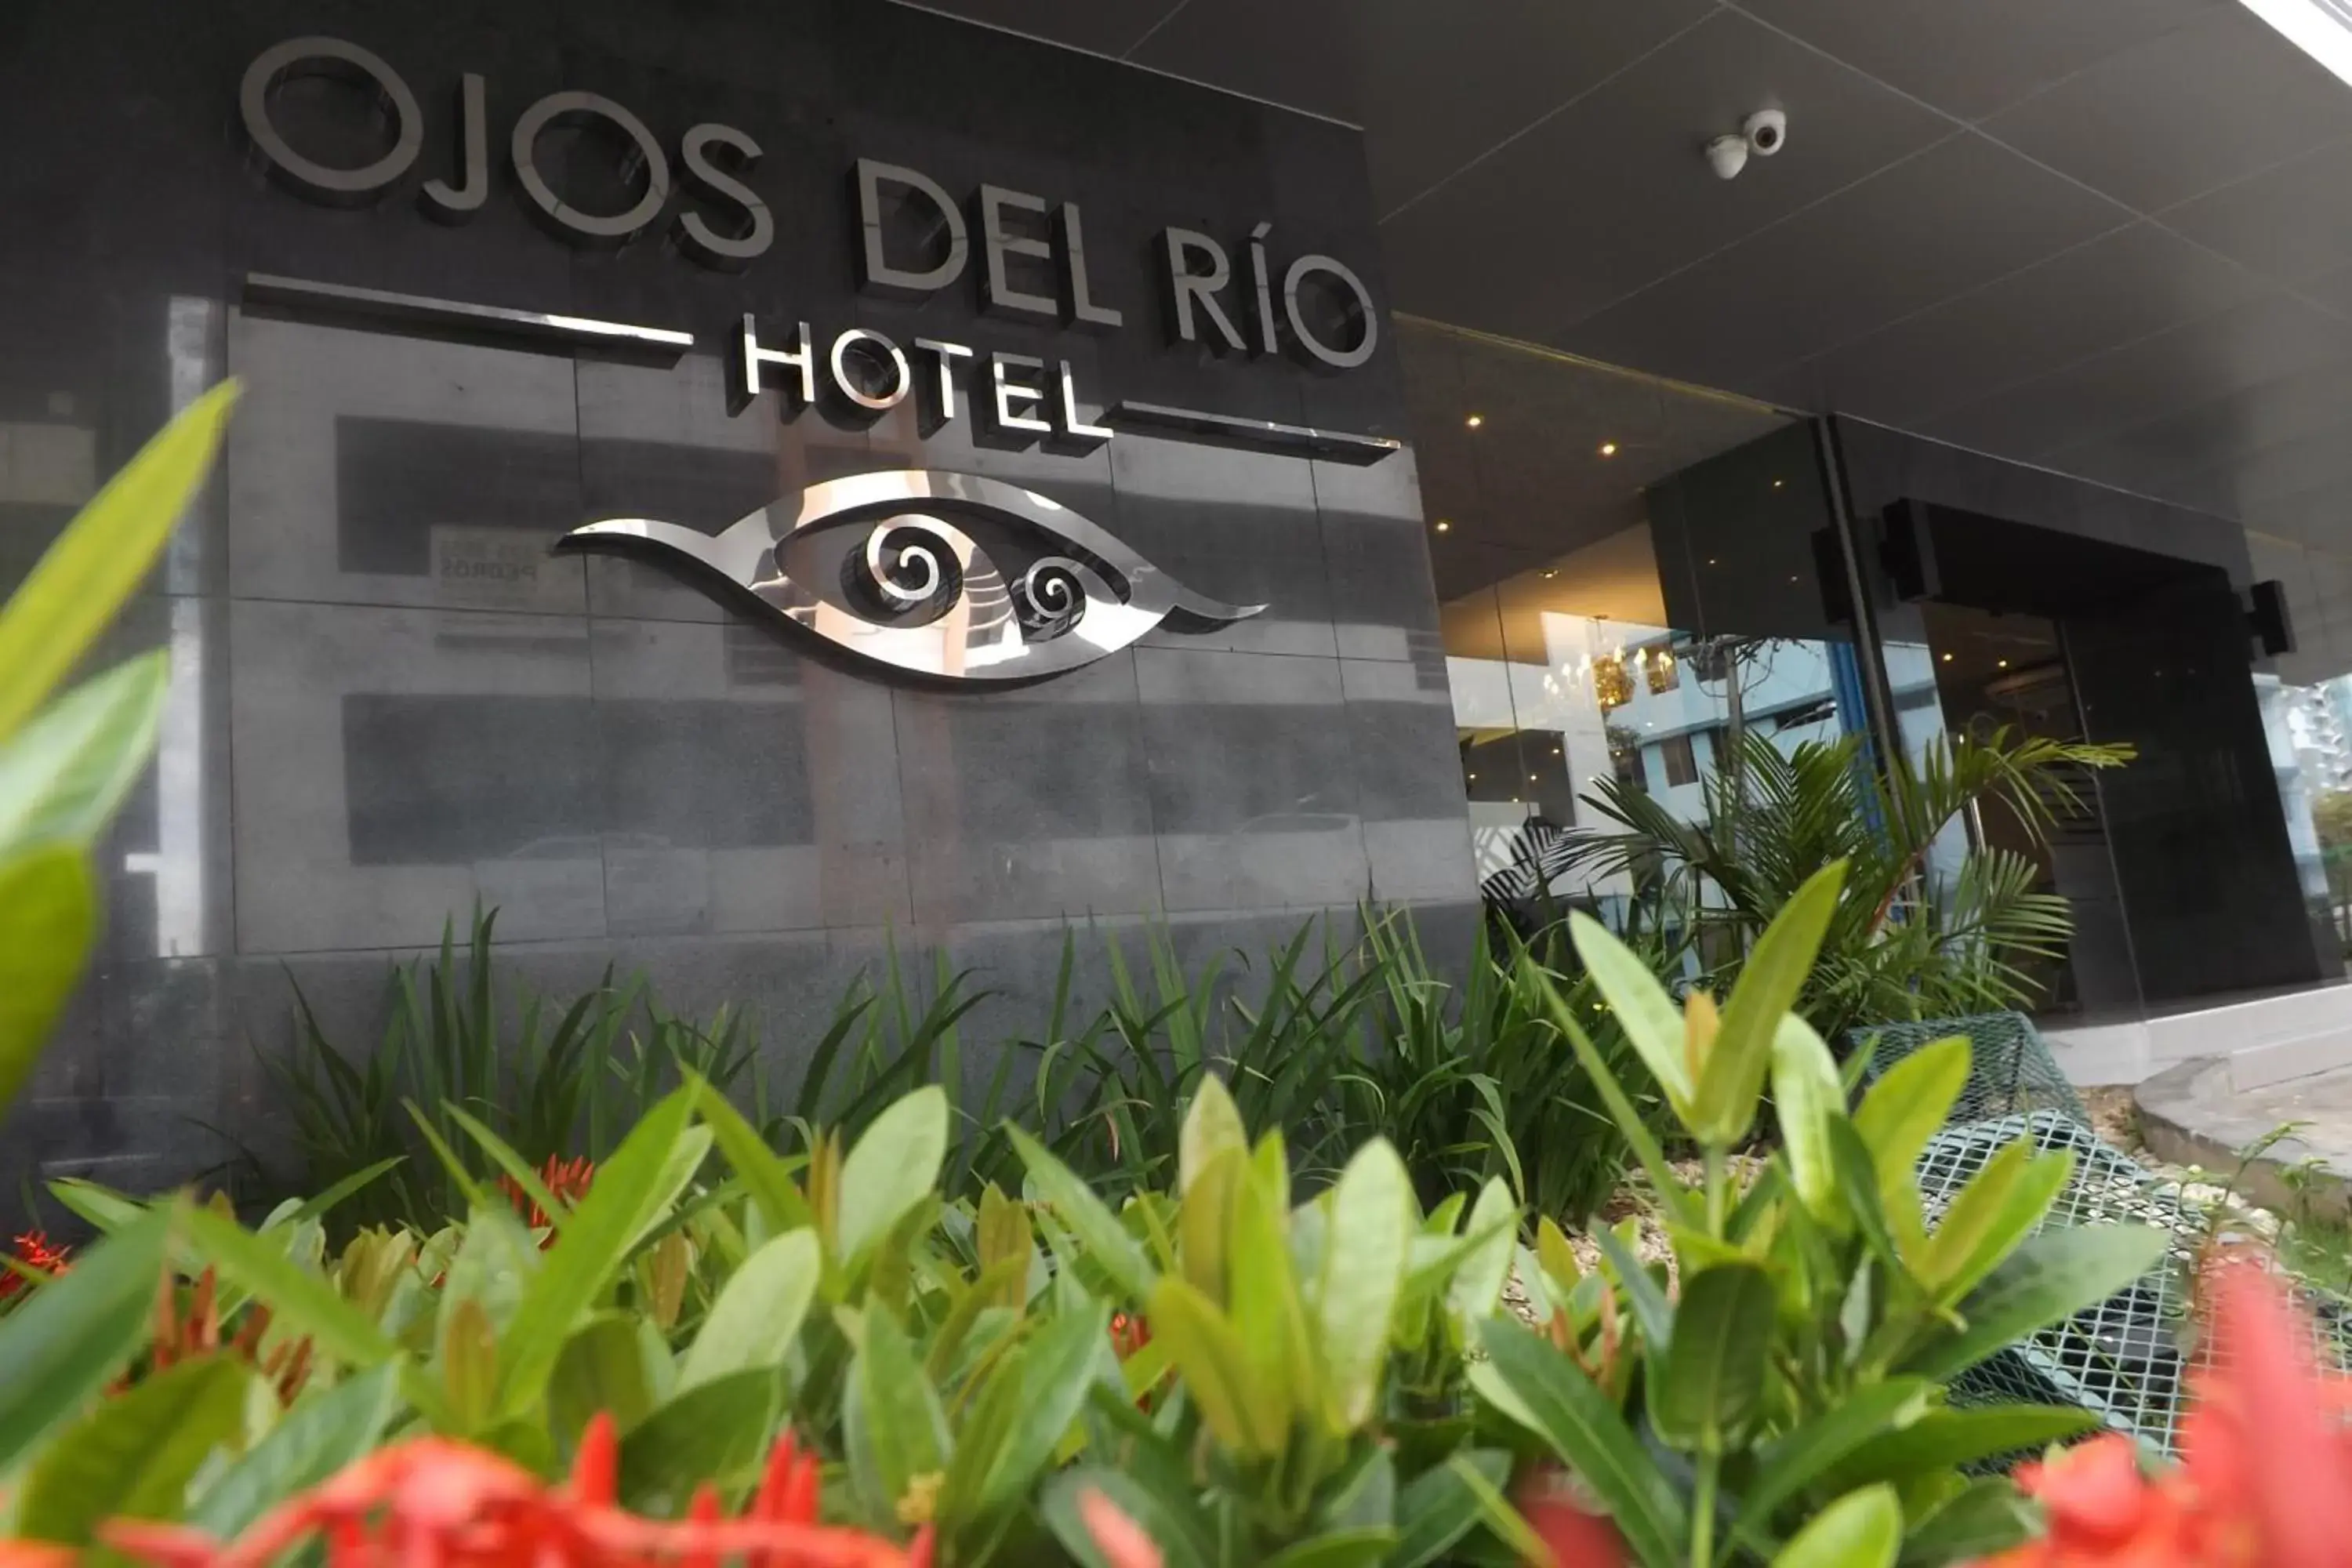 Property building, Facade/Entrance in Hotel Ojos Del Rio